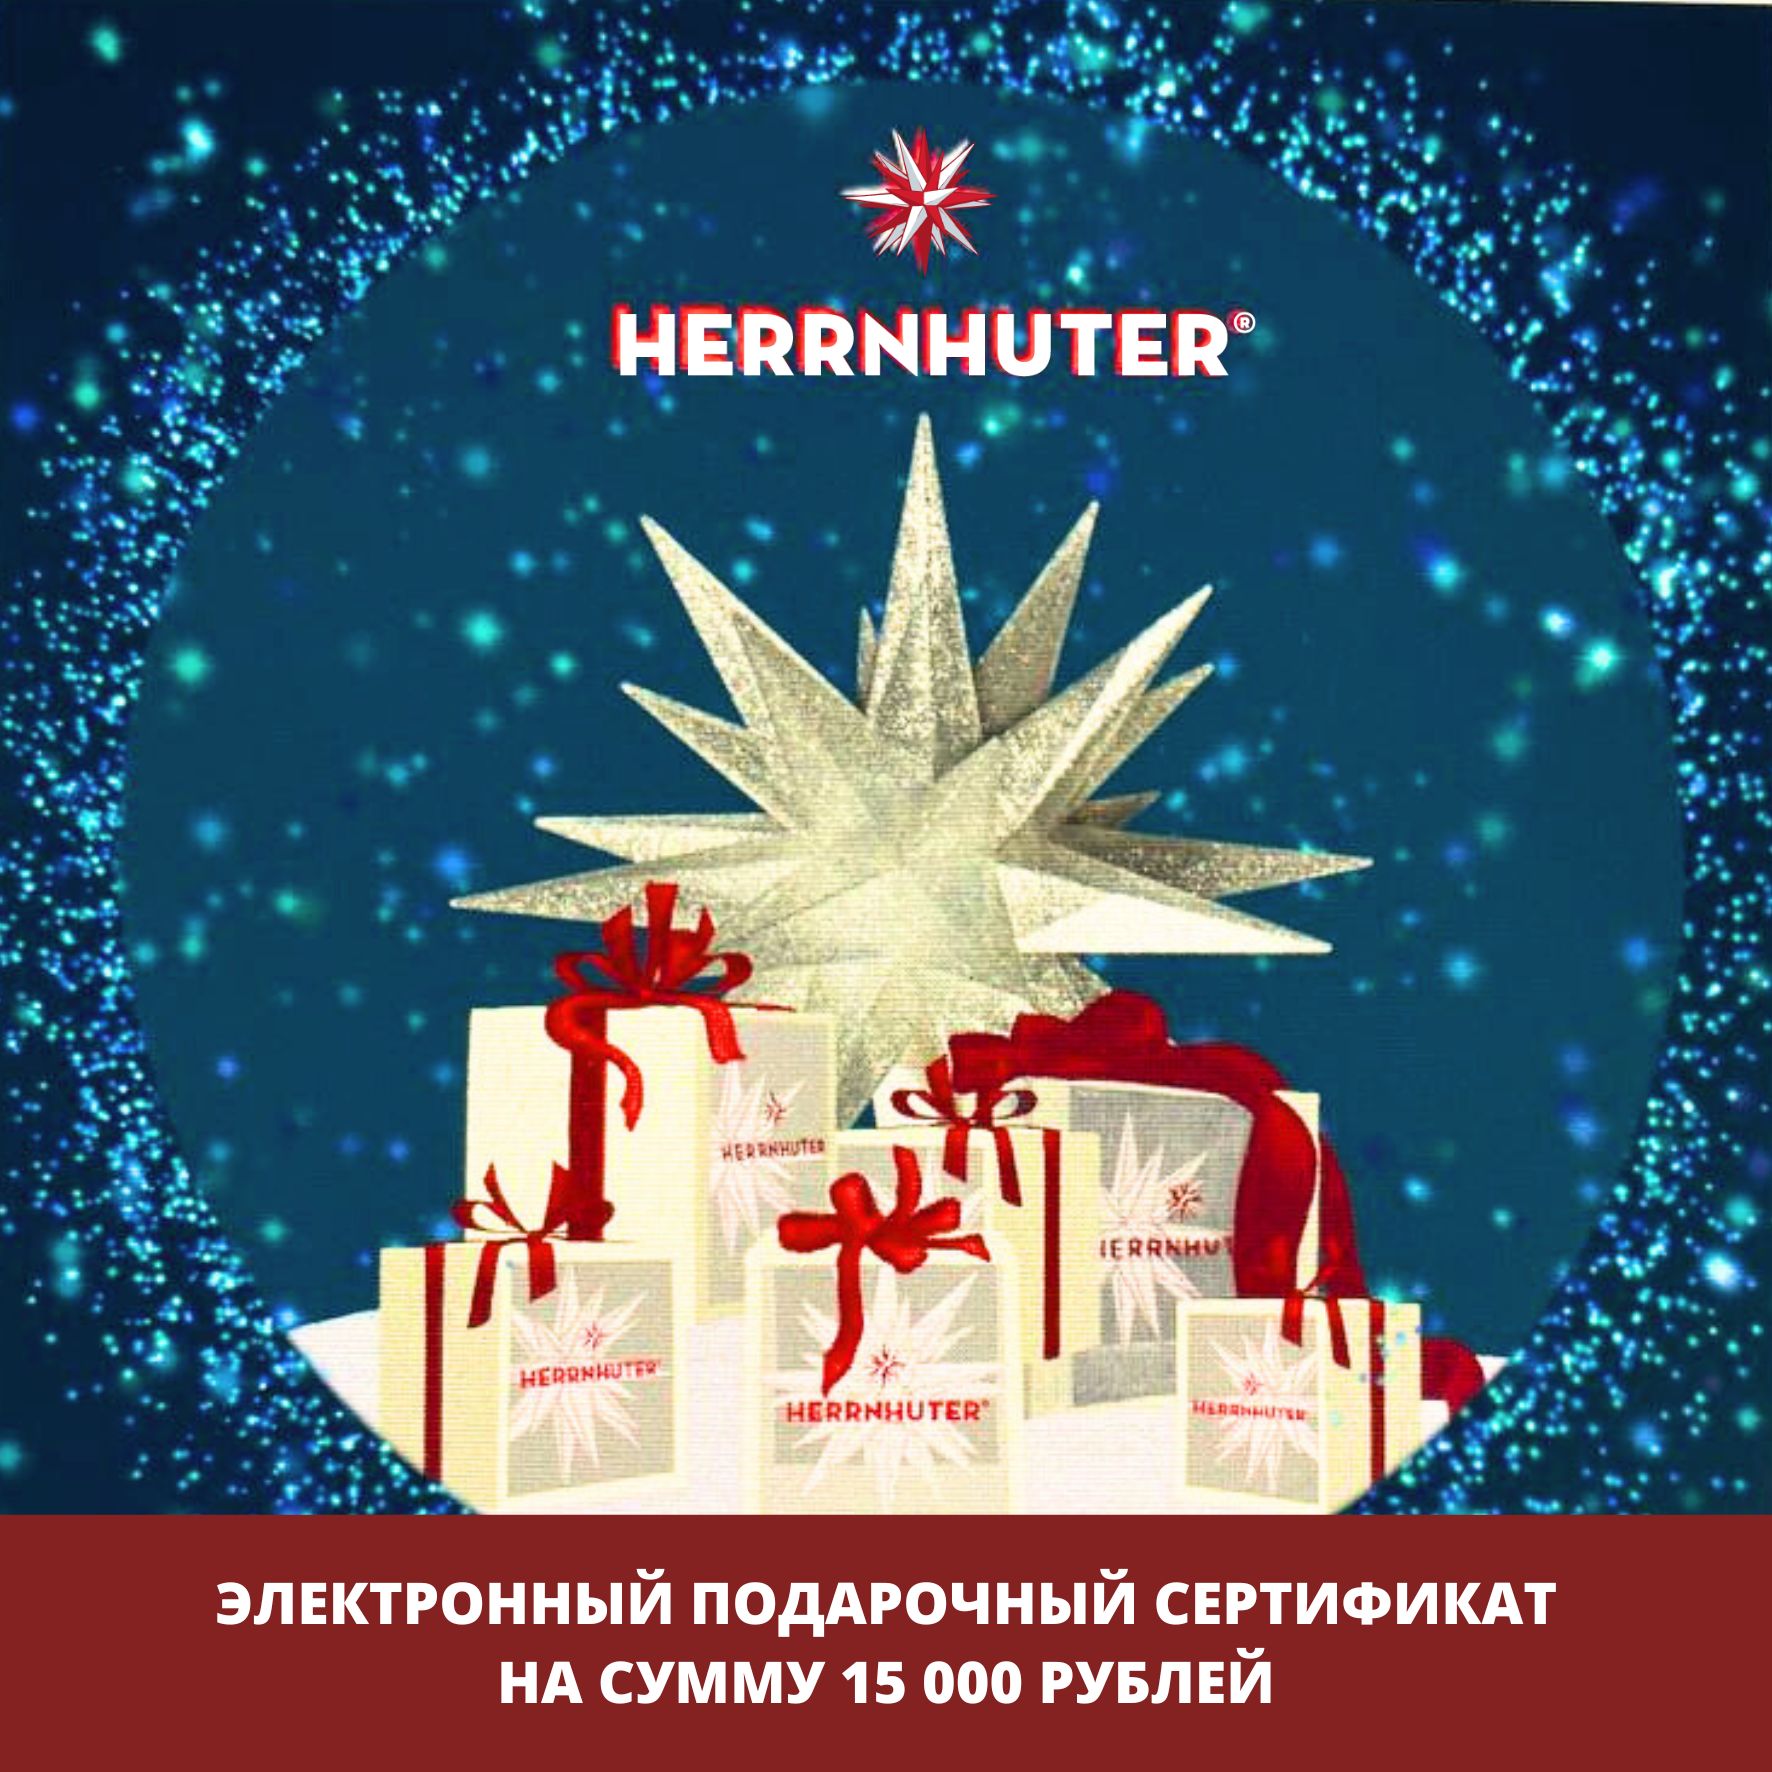 Электронный подарочный сертификат 15000 руб